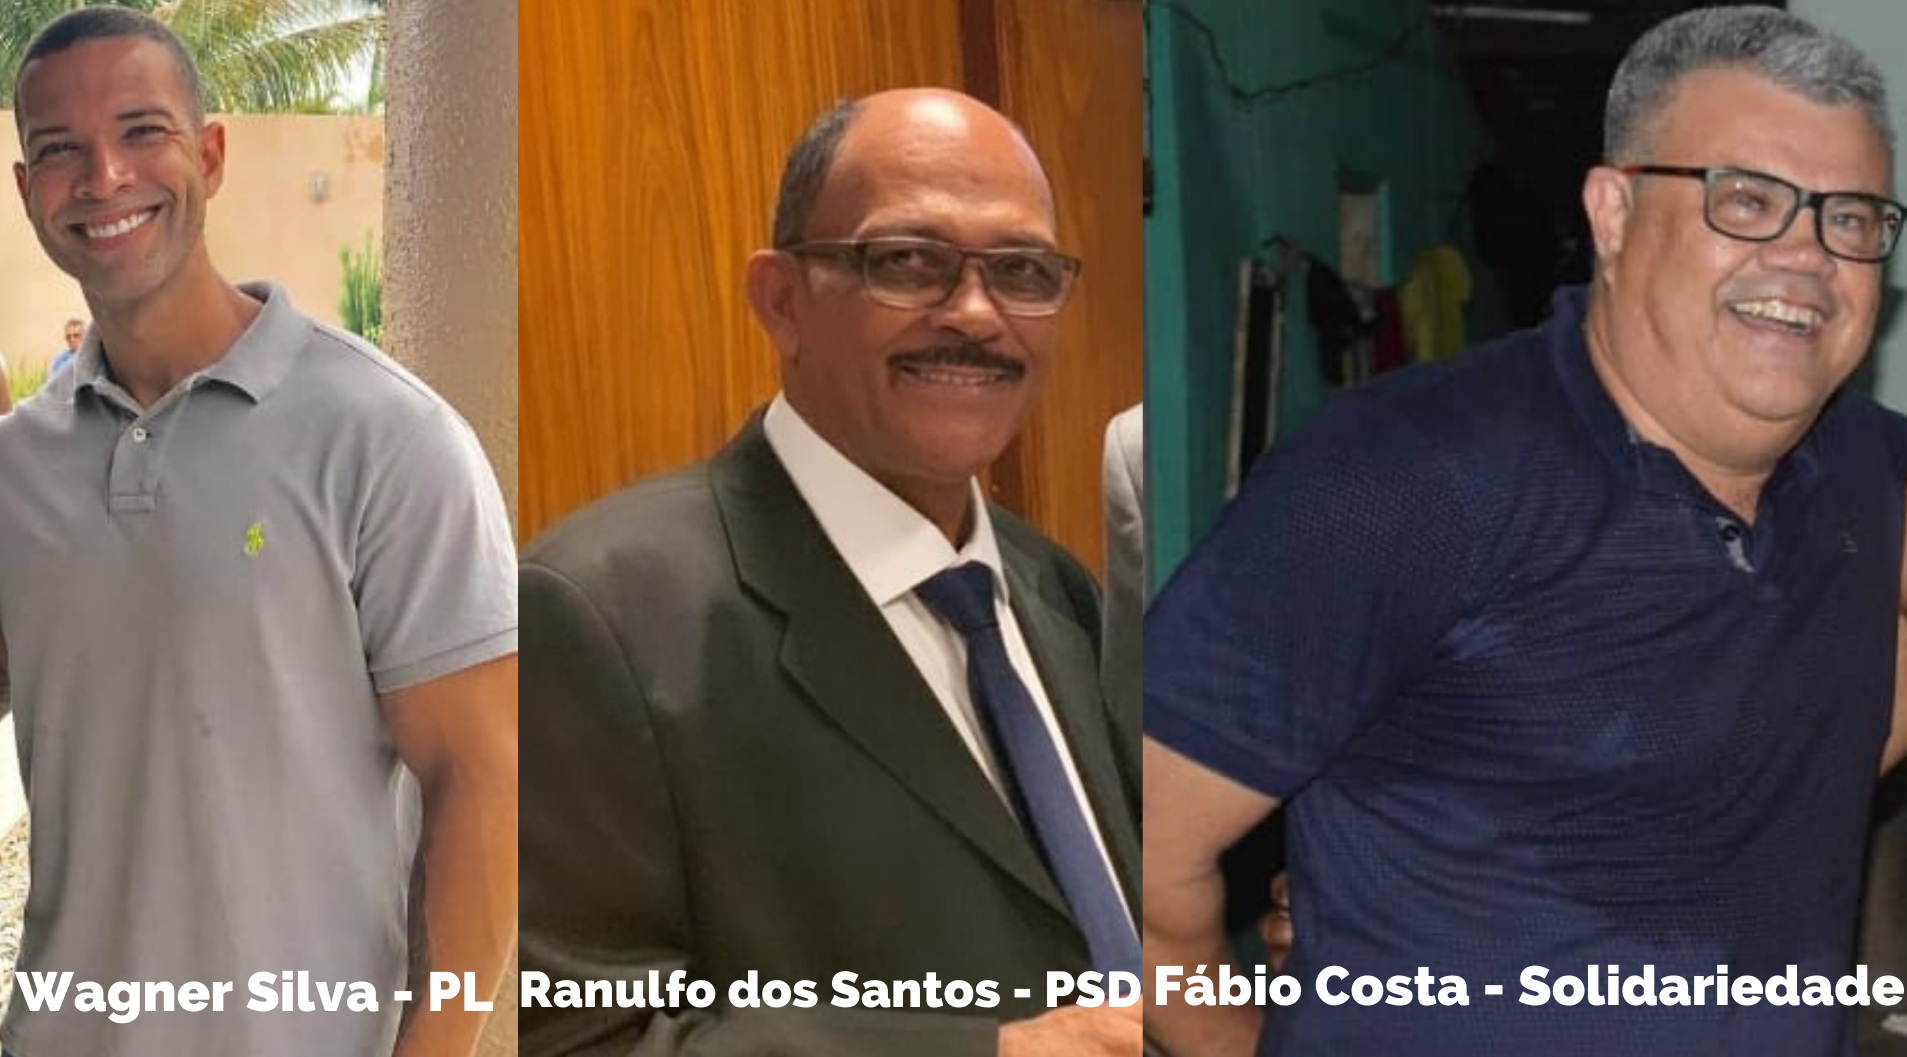 Disputa promete ser acirrada entre possíveis candidatos a prefeito de Arauá